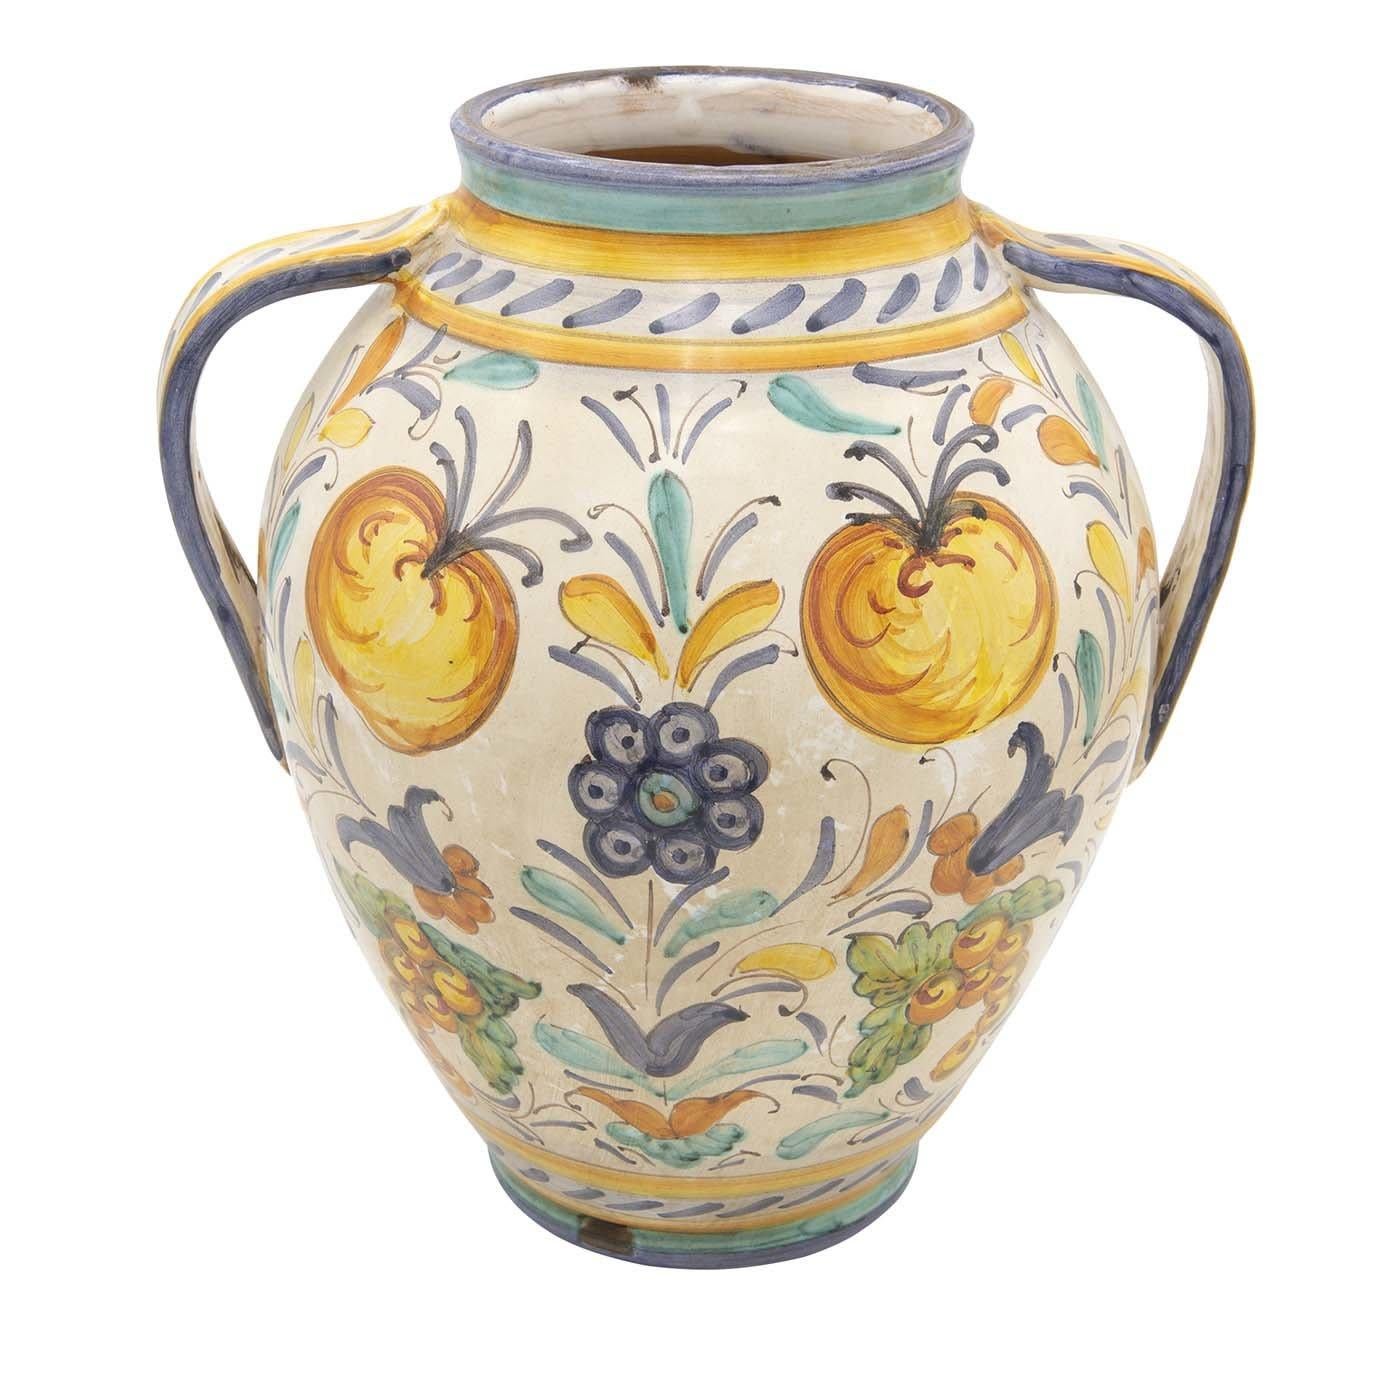 Objet d'art étonnant, ce vase a été entièrement réalisé à la main en céramique par le maître artisan Lorenza Adami. Expression de la tradition emblématique de la poterie de la Renaissance, ce vase présente des courbes délicates, deux anses et un